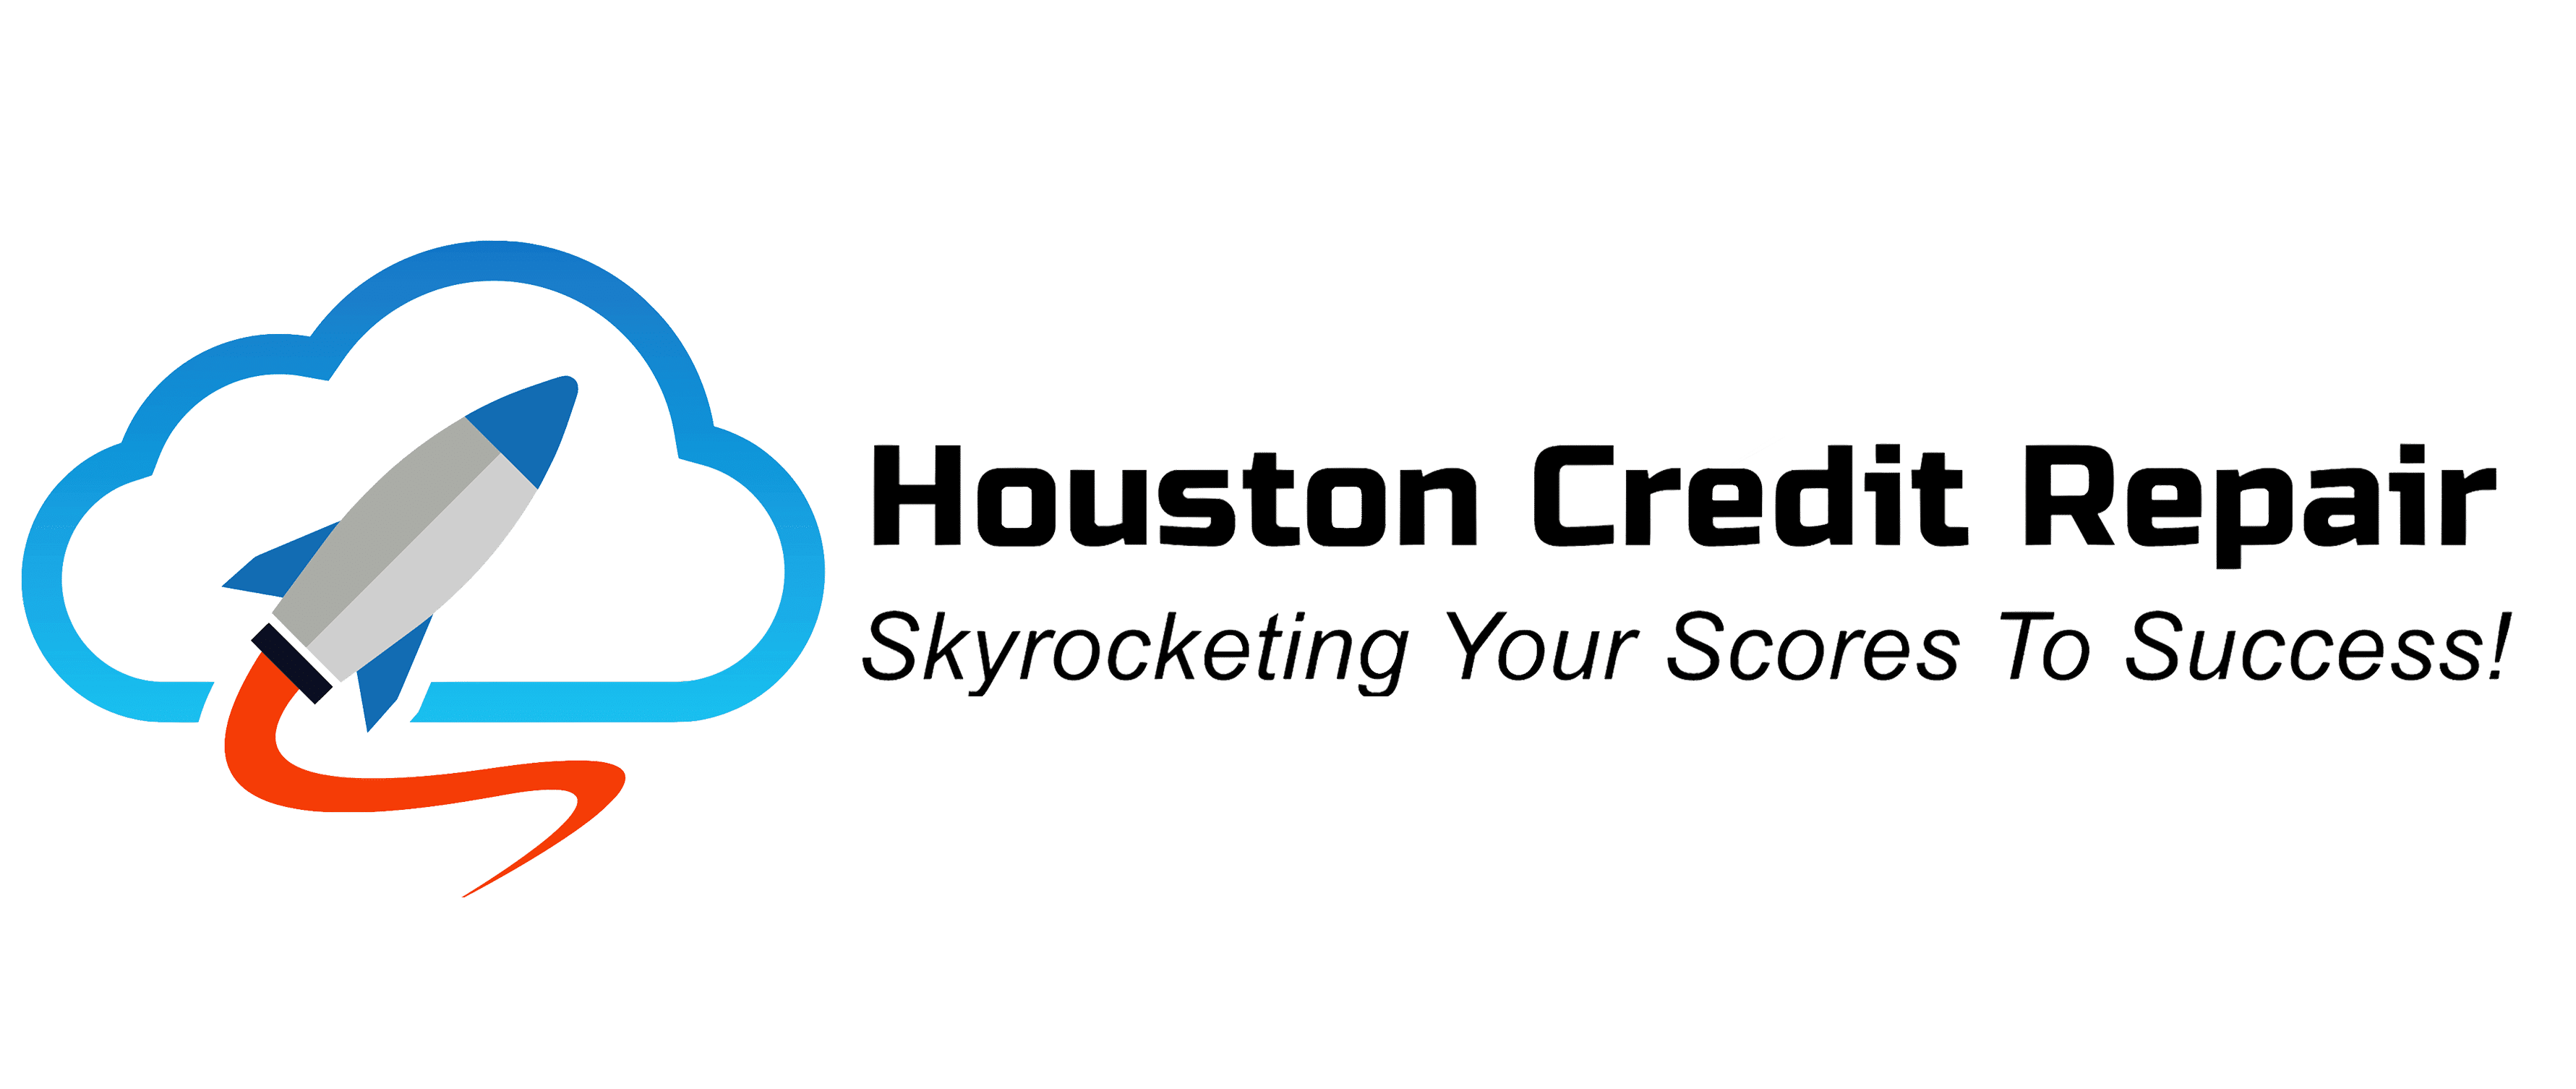 Houston Credit Repair